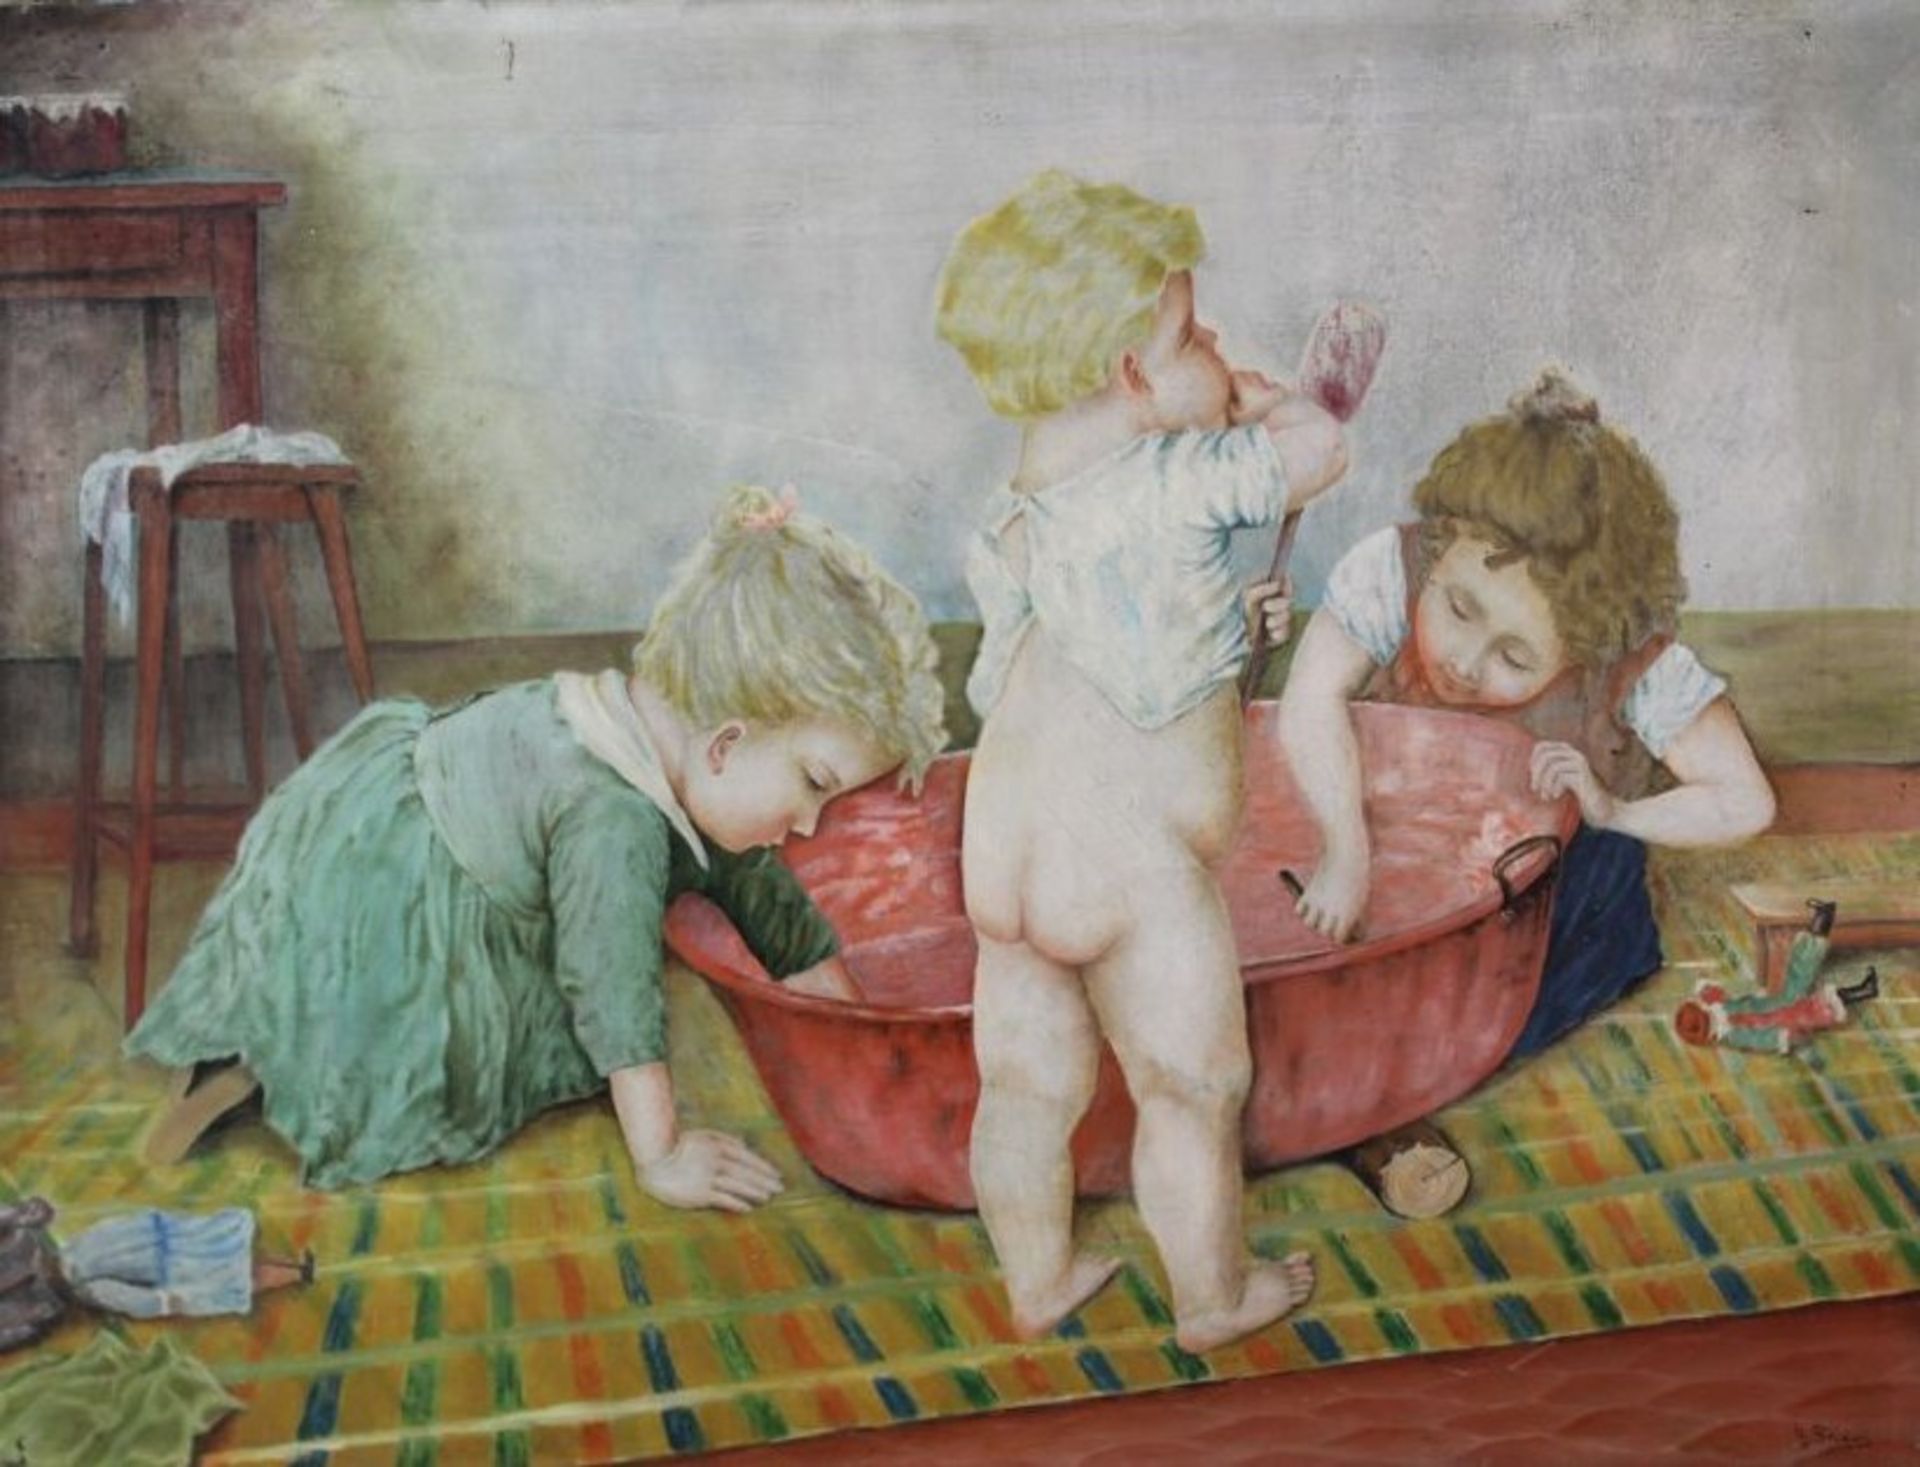 H.Studer o.ä., spielende Kinder, Öl/Leinwand, ungerahmt, 53 x 70cm